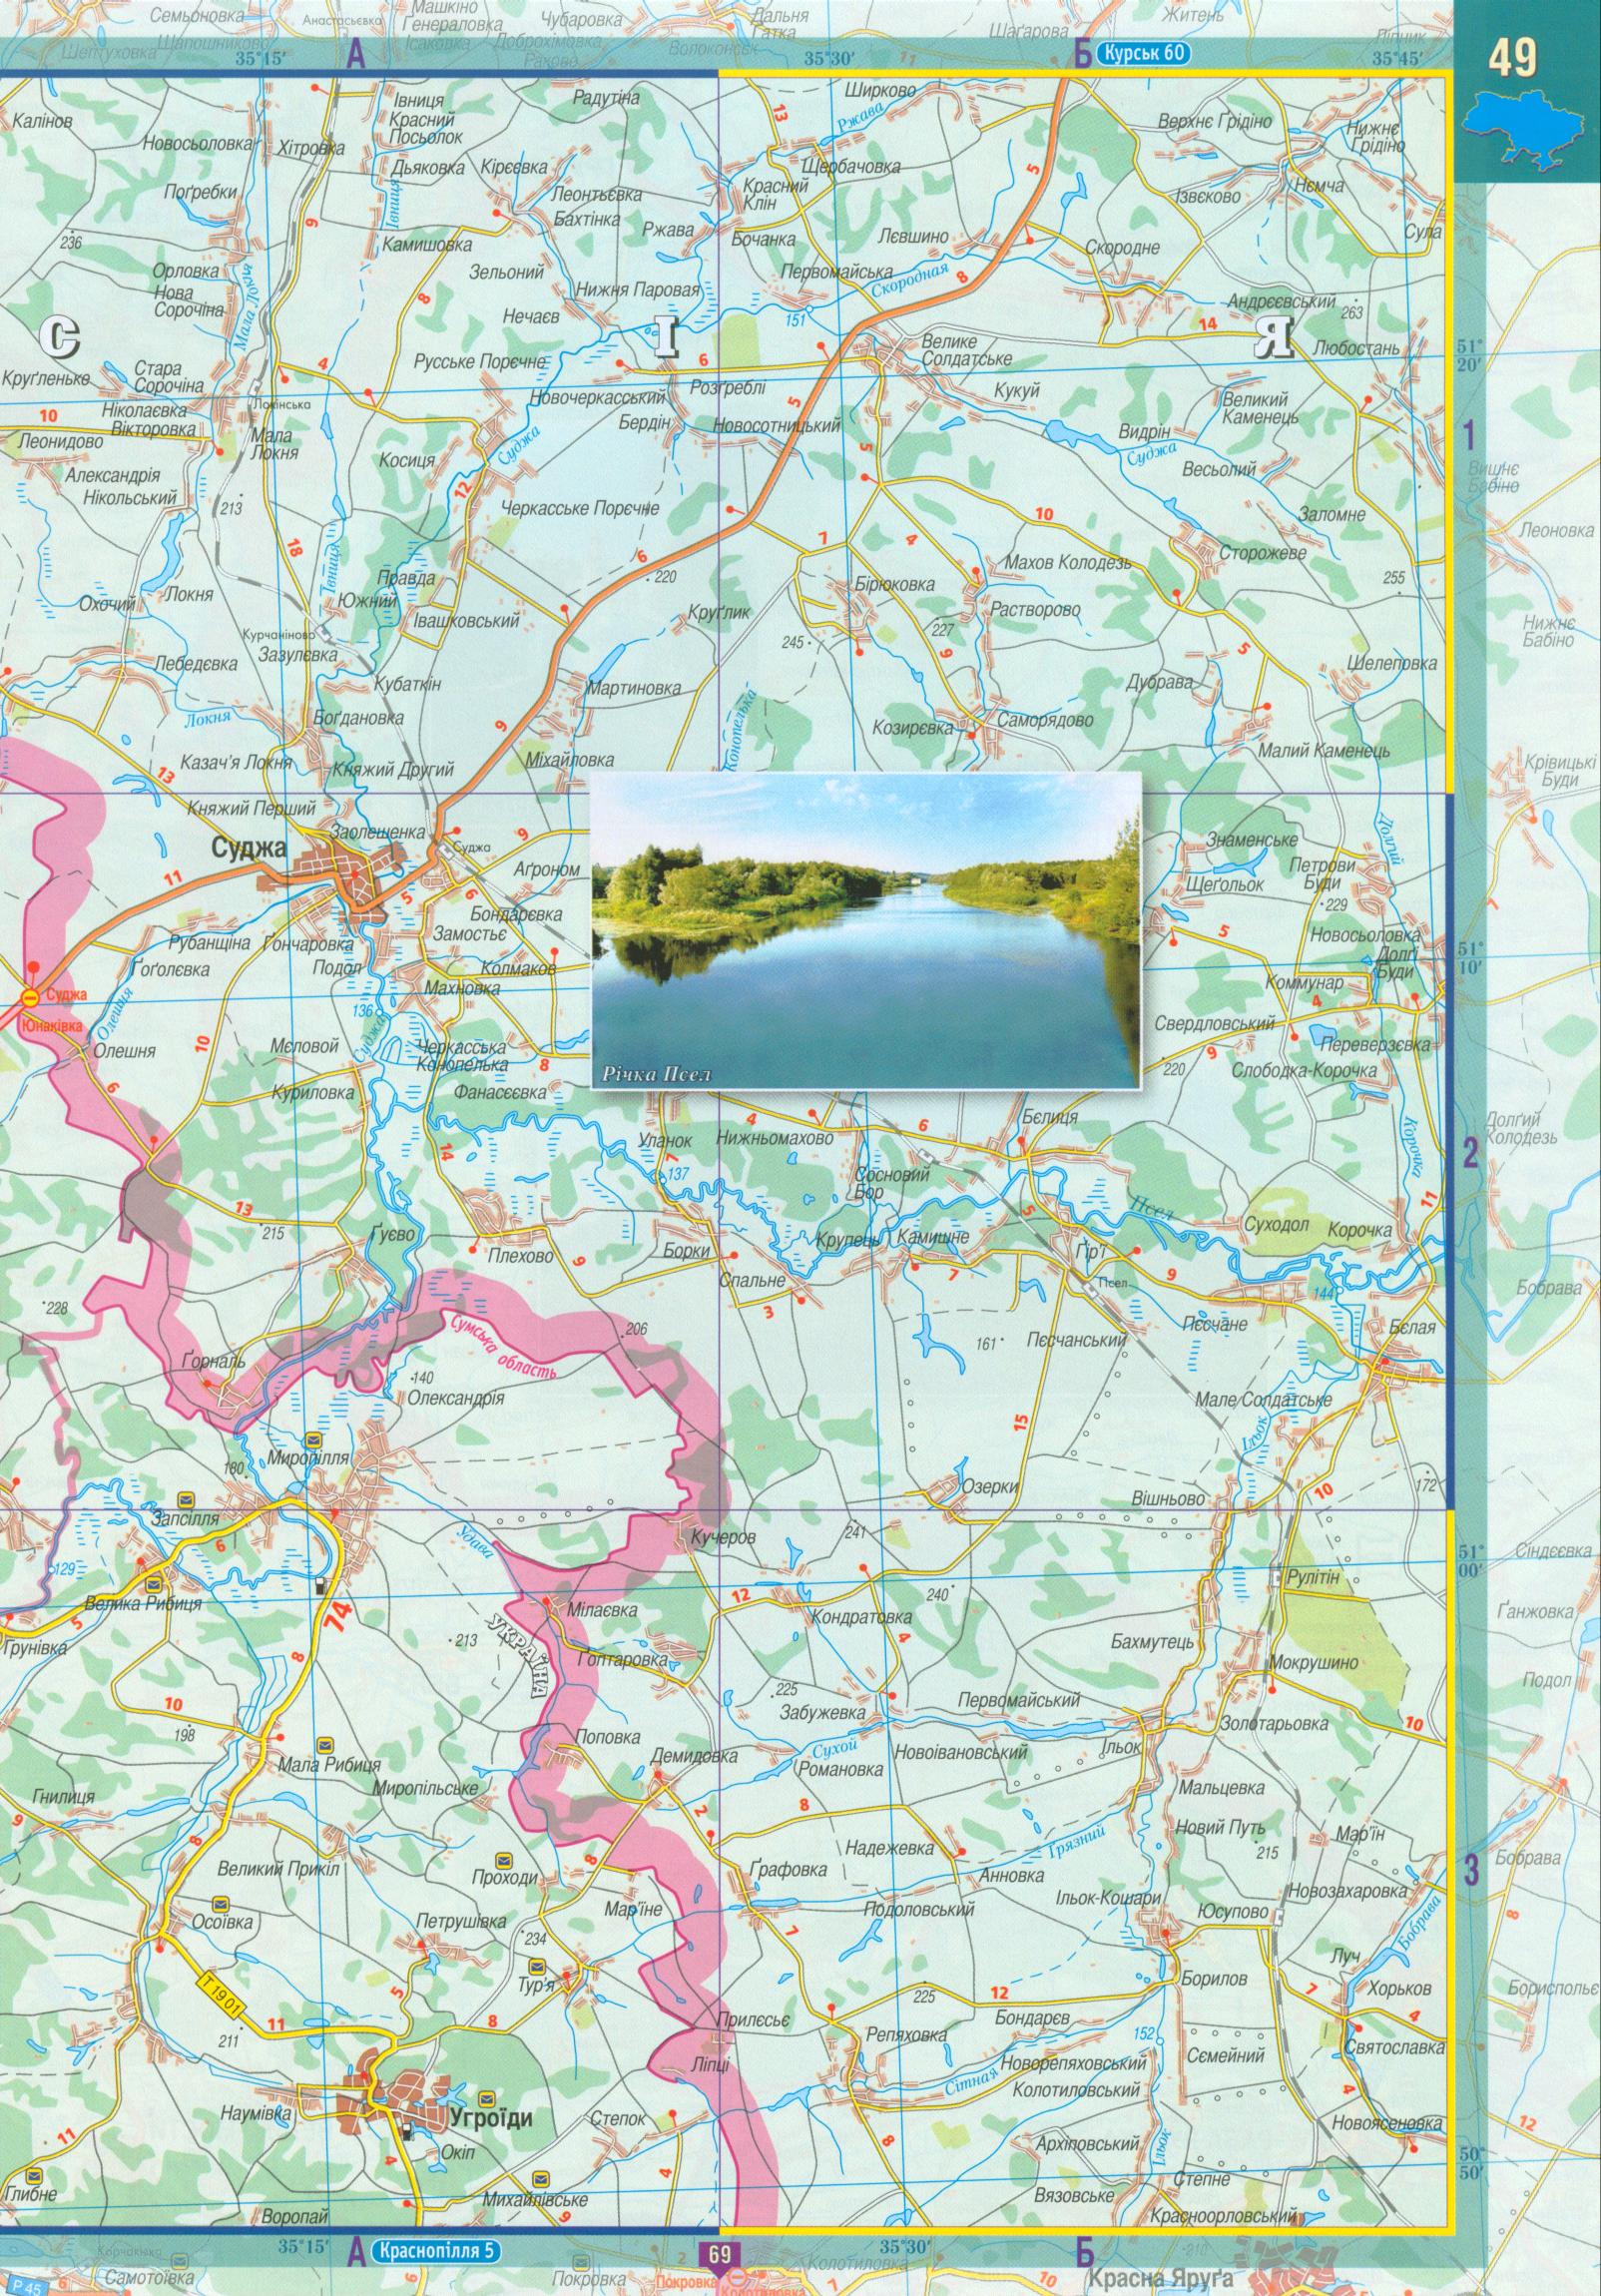 Карта Сумской области. Атлас автодорог Сумской области масштаба 1см:2,5км на украинском, B0 - 